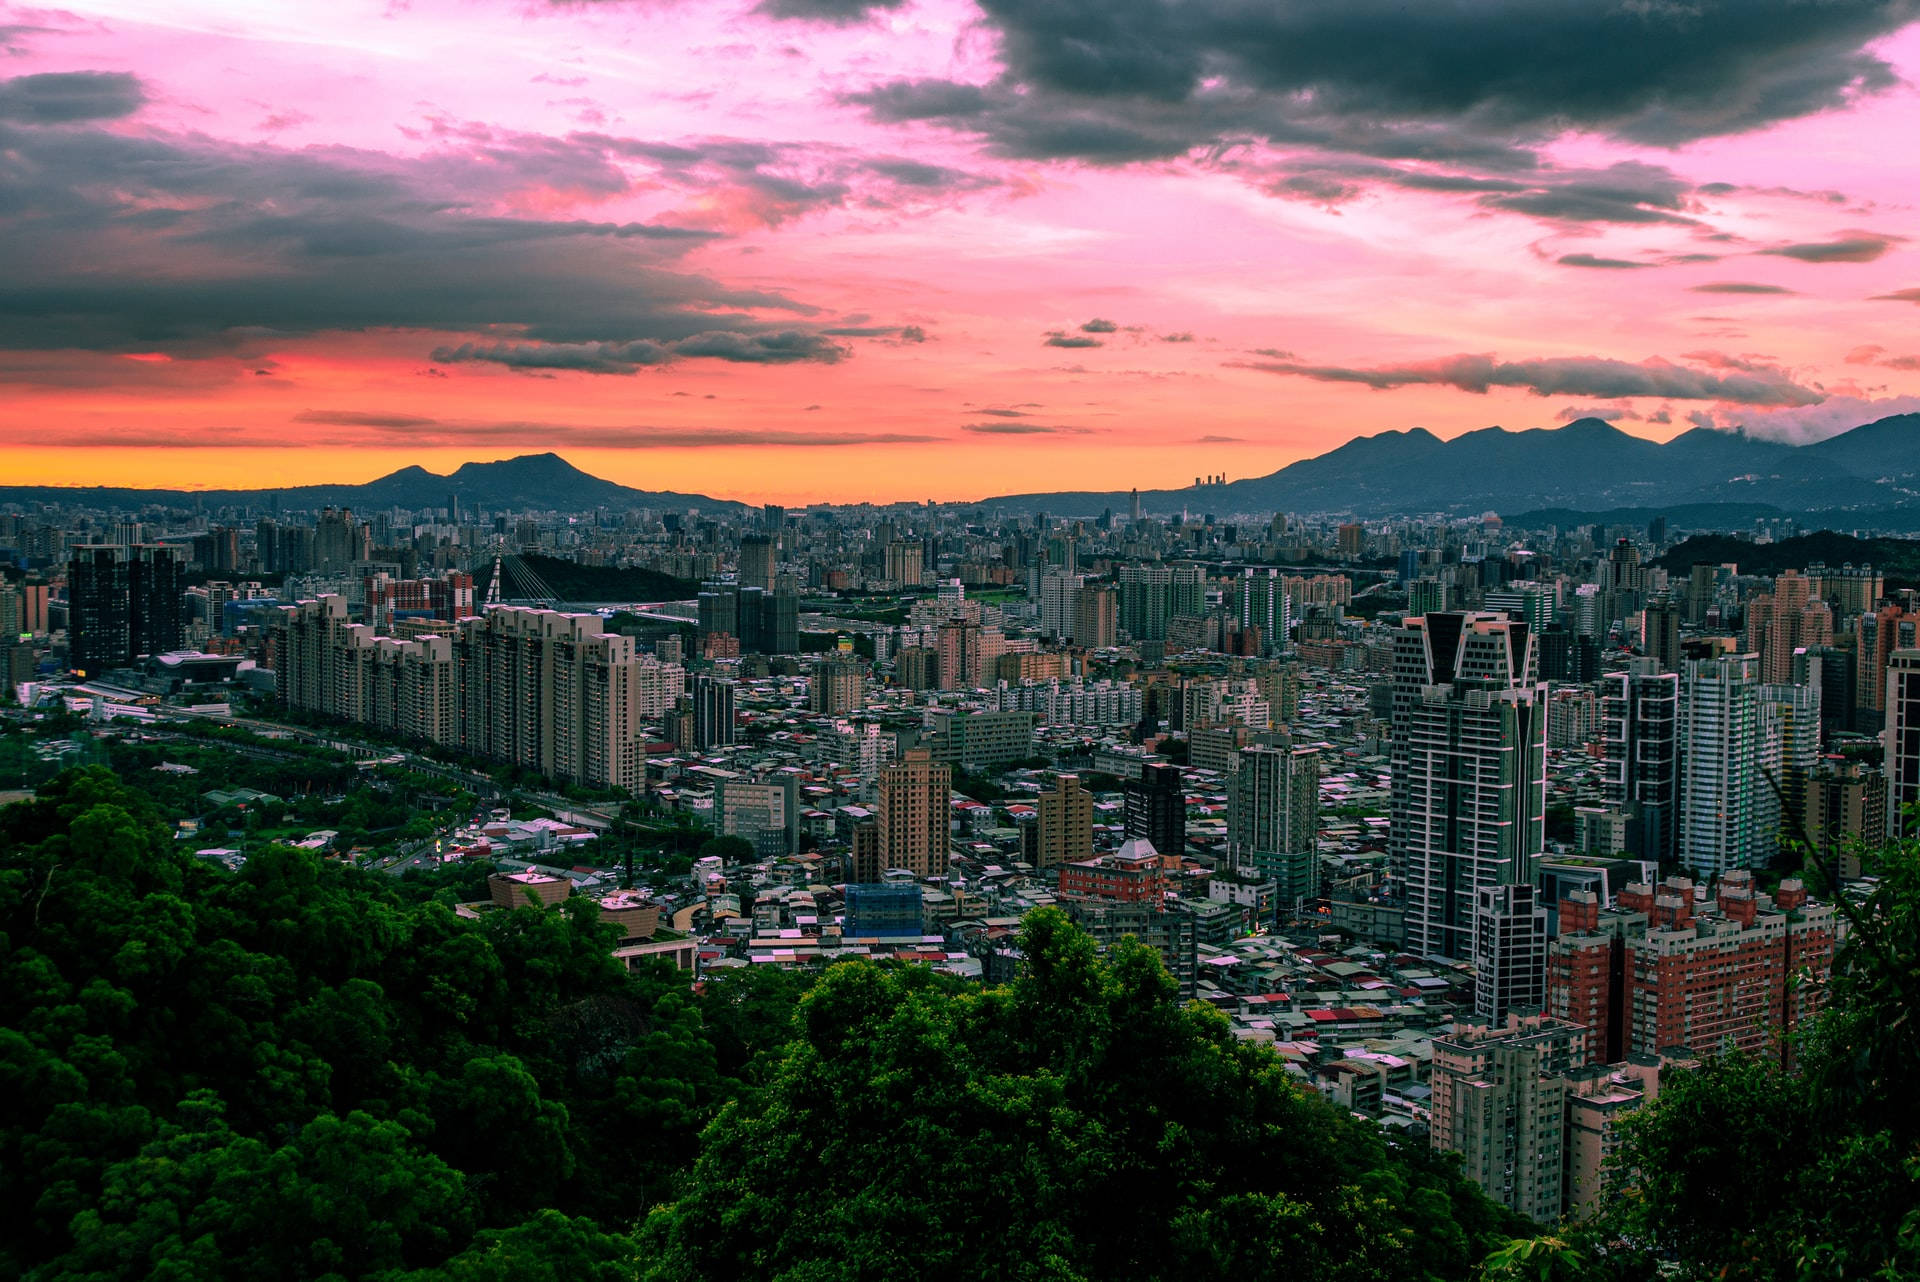 Taipei City Skyline